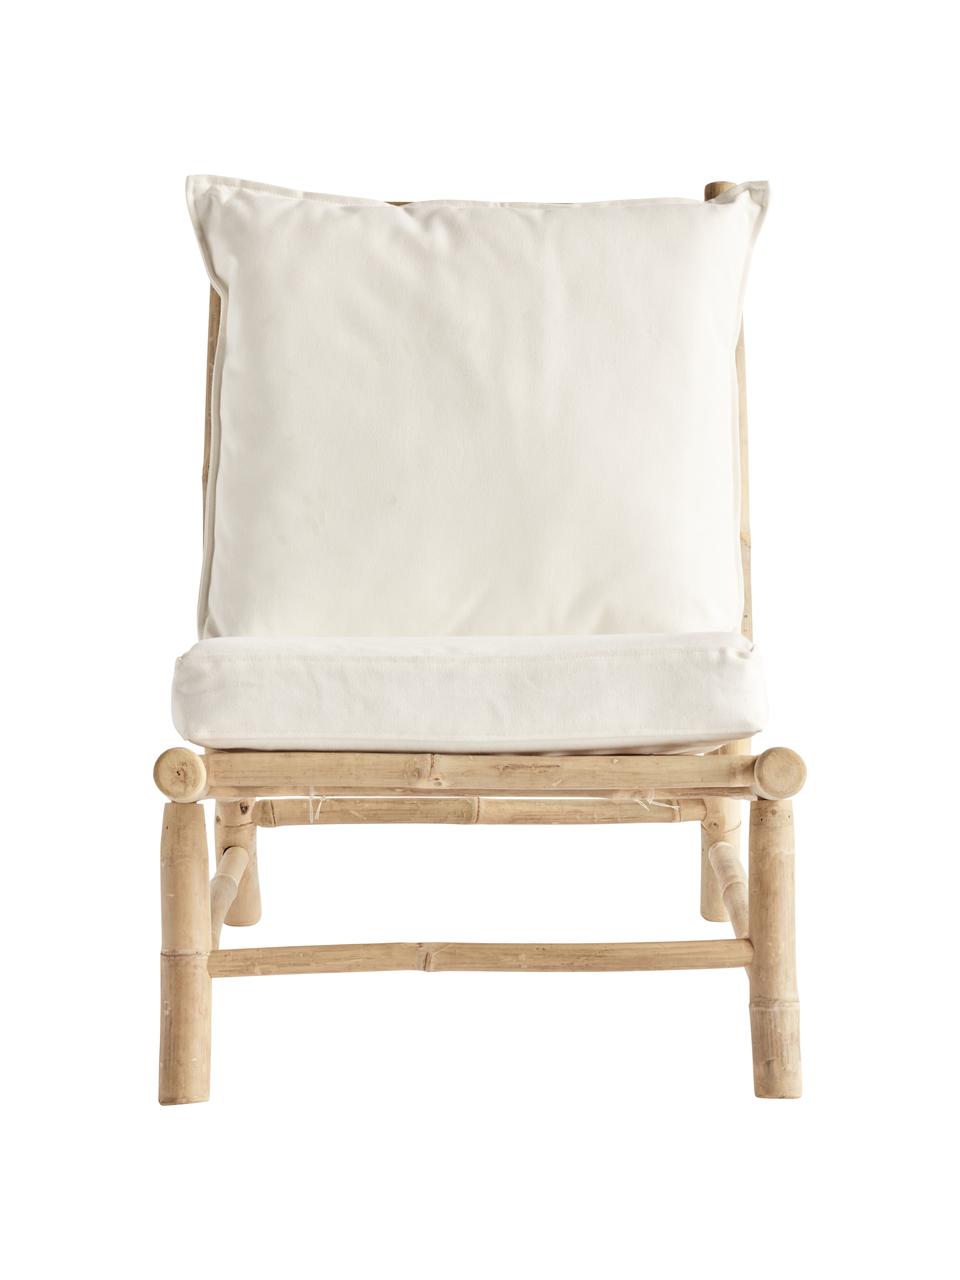 Fotel wypoczynkowy z drewna bambusowego Bamslow, Stelaż: drewno bambusowe, Tapicerka: 100% bawełna, Biały, brązowy, S 55 x G 87 cm